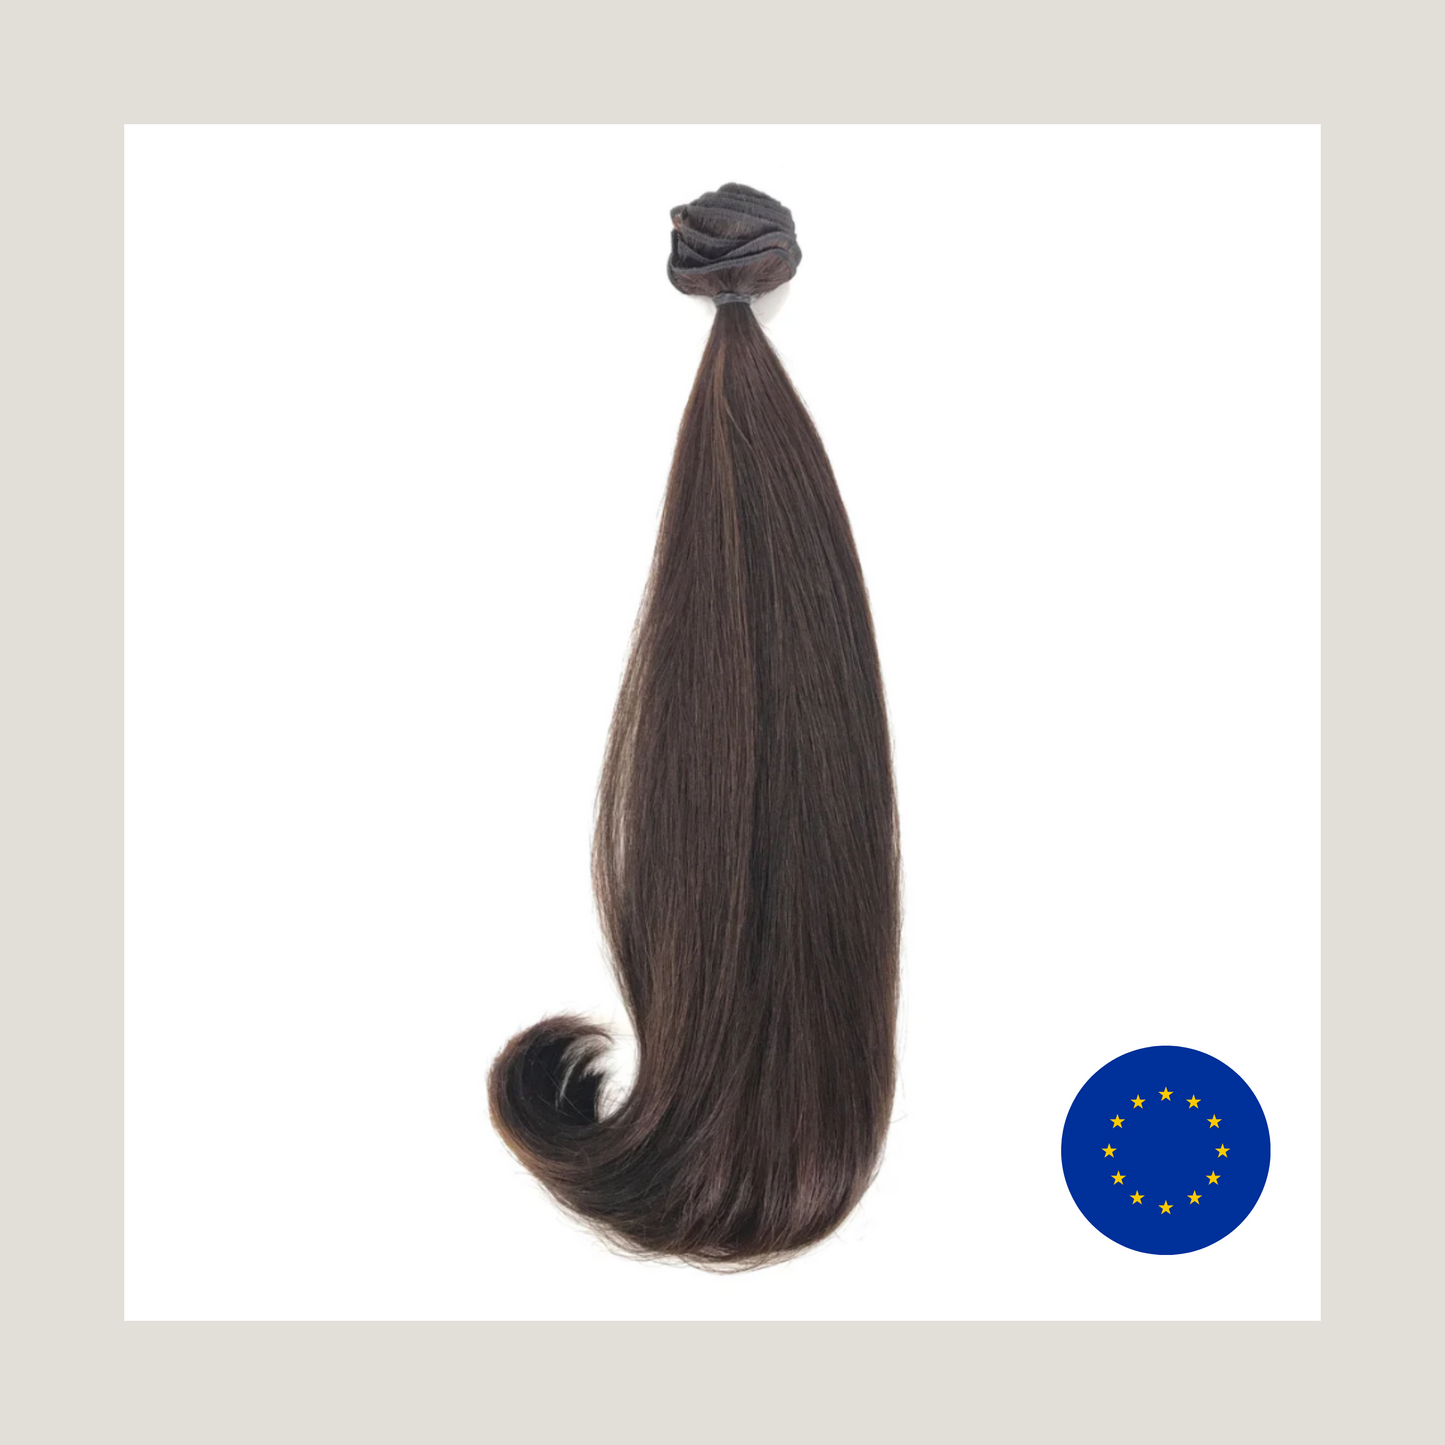 שיער אנושי של רמי בתולה אירופאית מצוירת כפולה, שורט